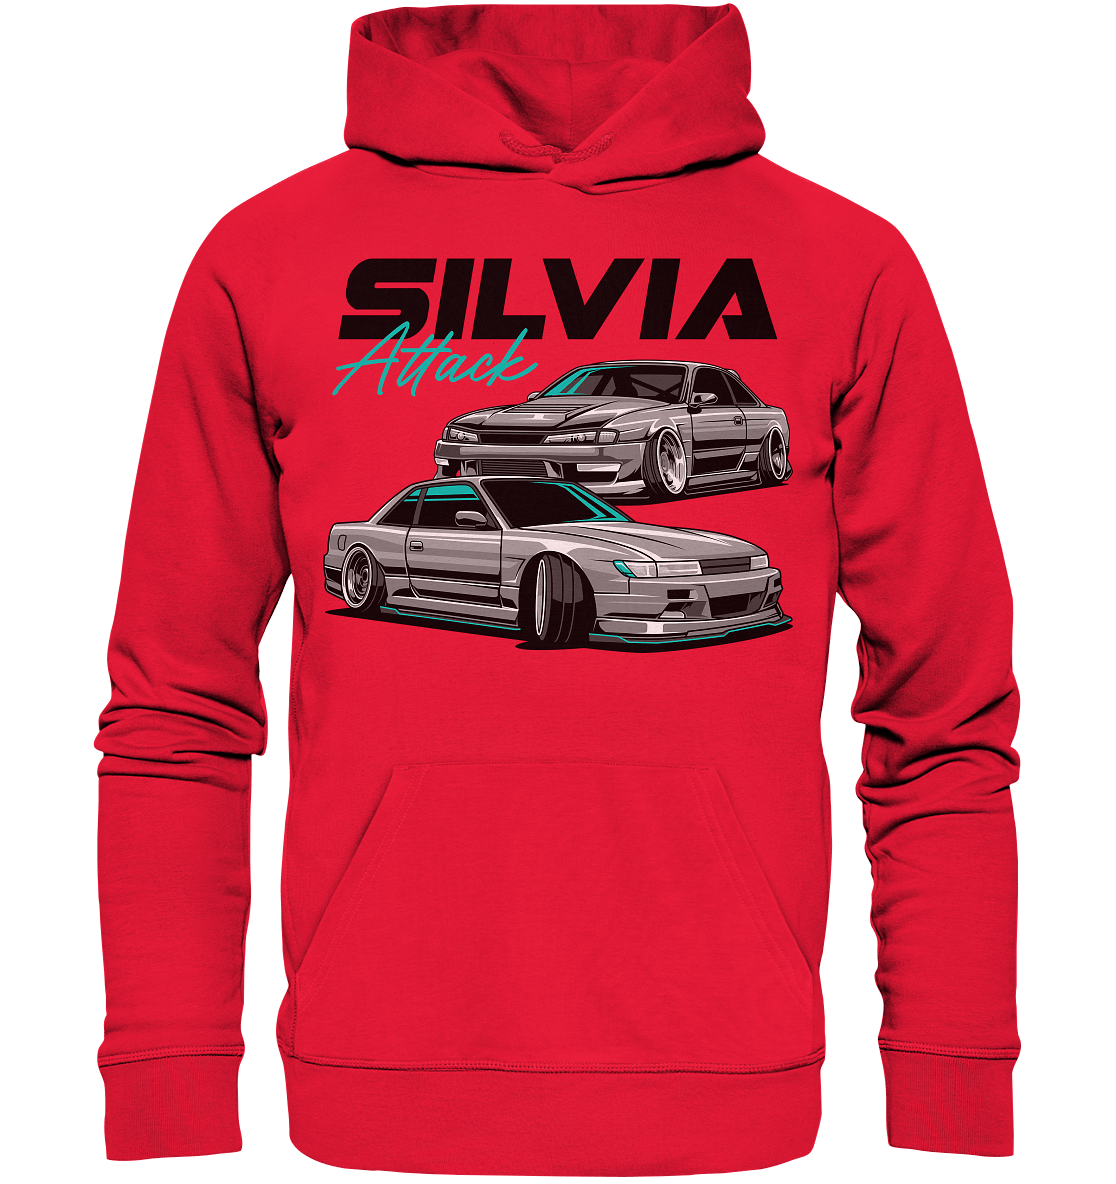 Silvia Attack - Premium Unisex Hoodie - MotoMerch.de